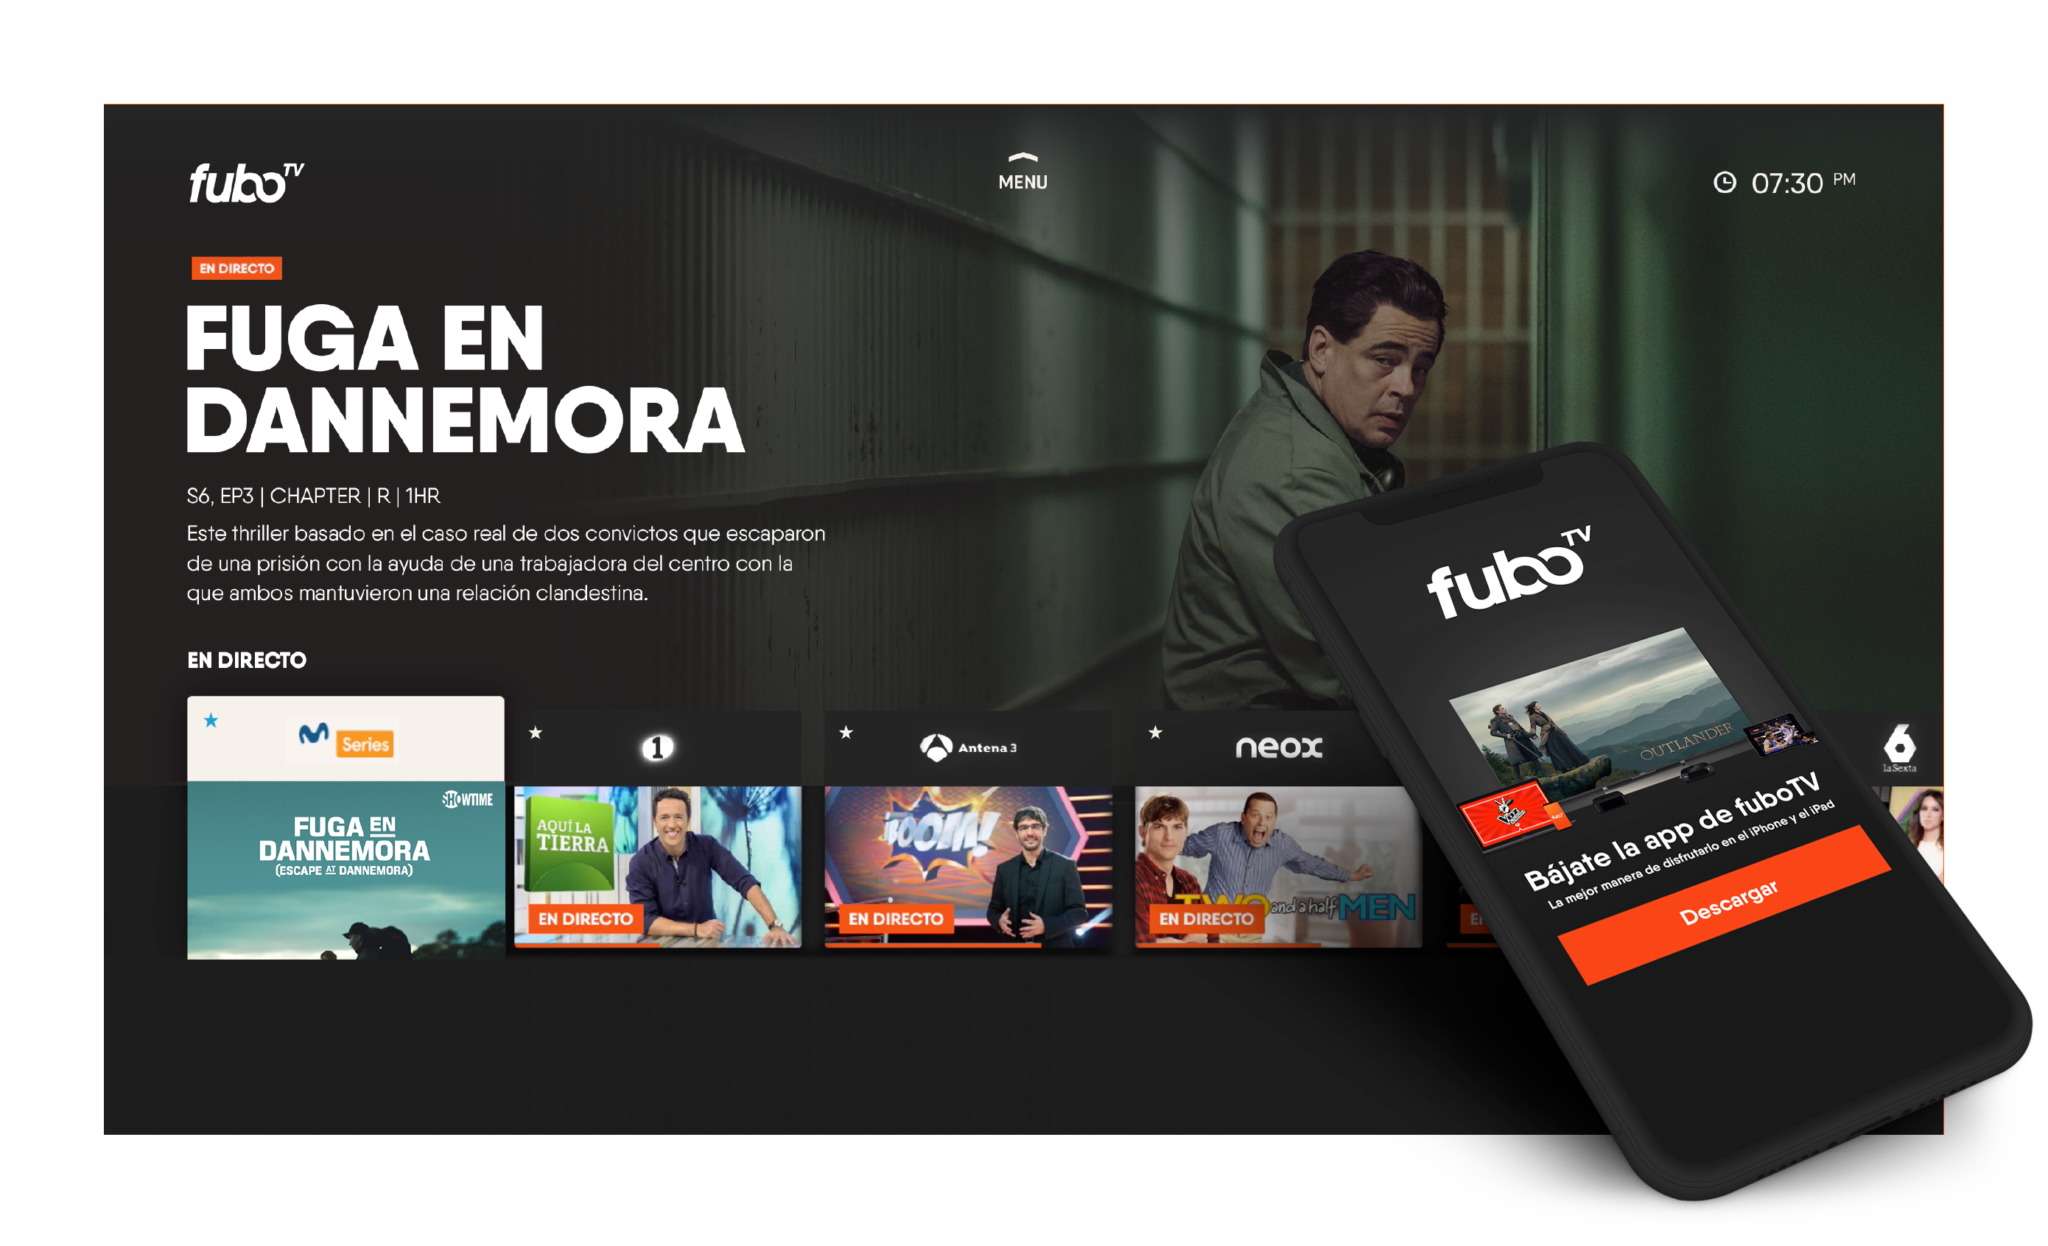 fuboTV is Launching in Spain